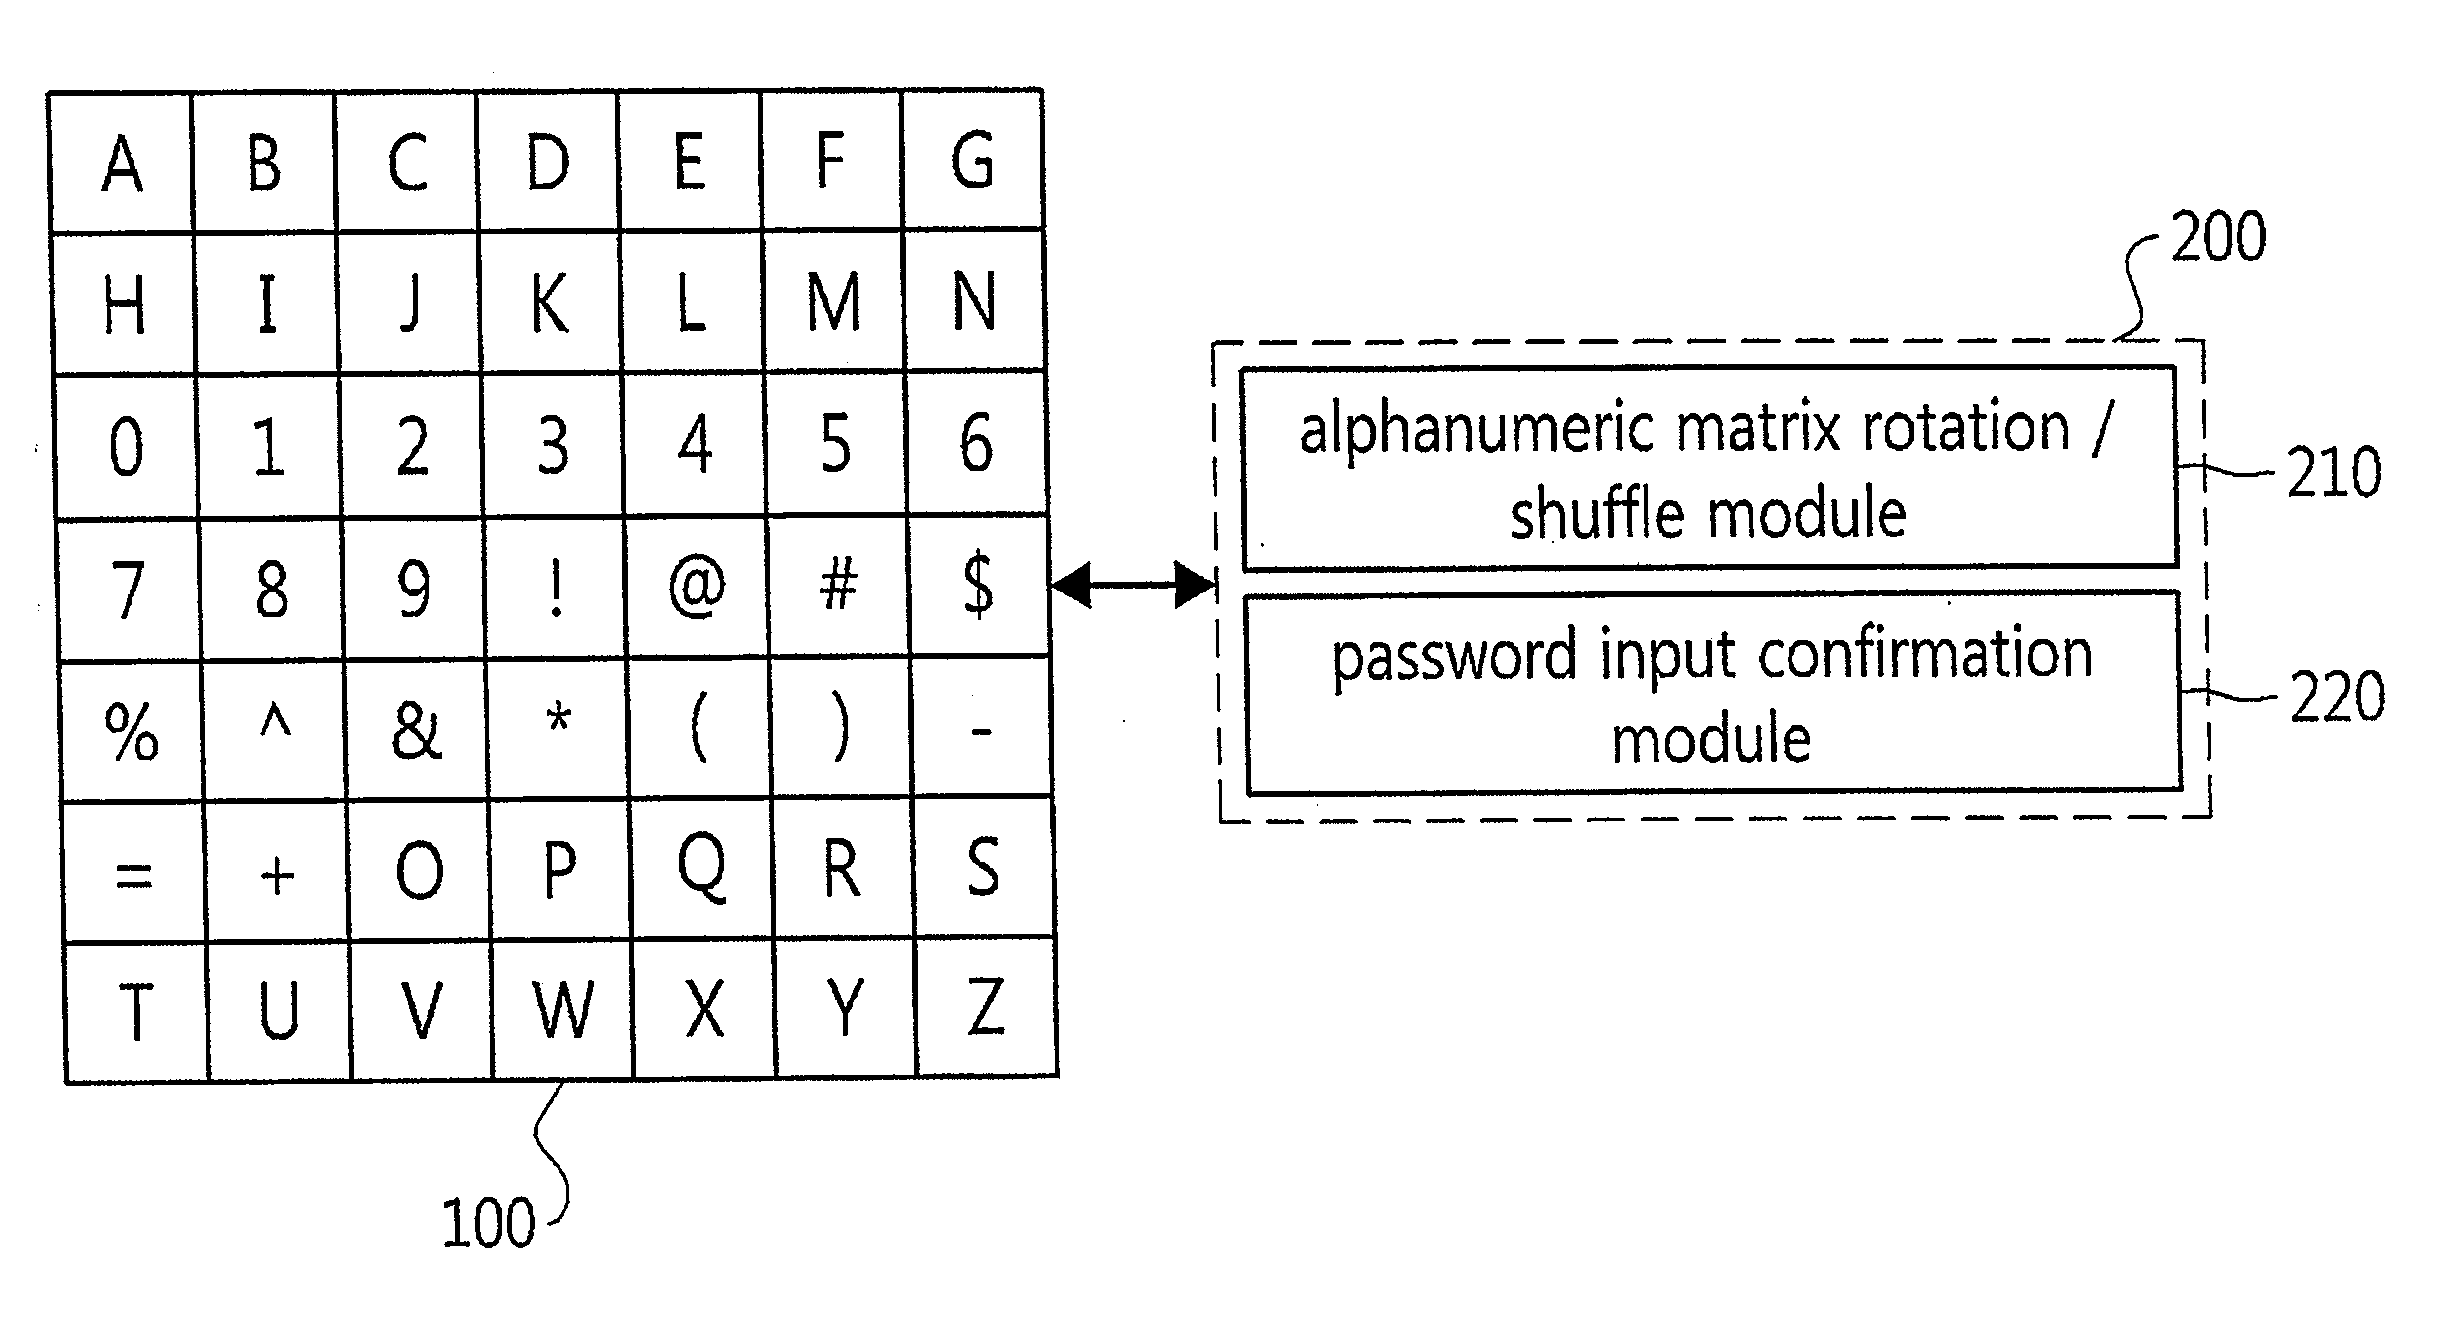 Password input system using an alphanumeric matrix and password input method using the same